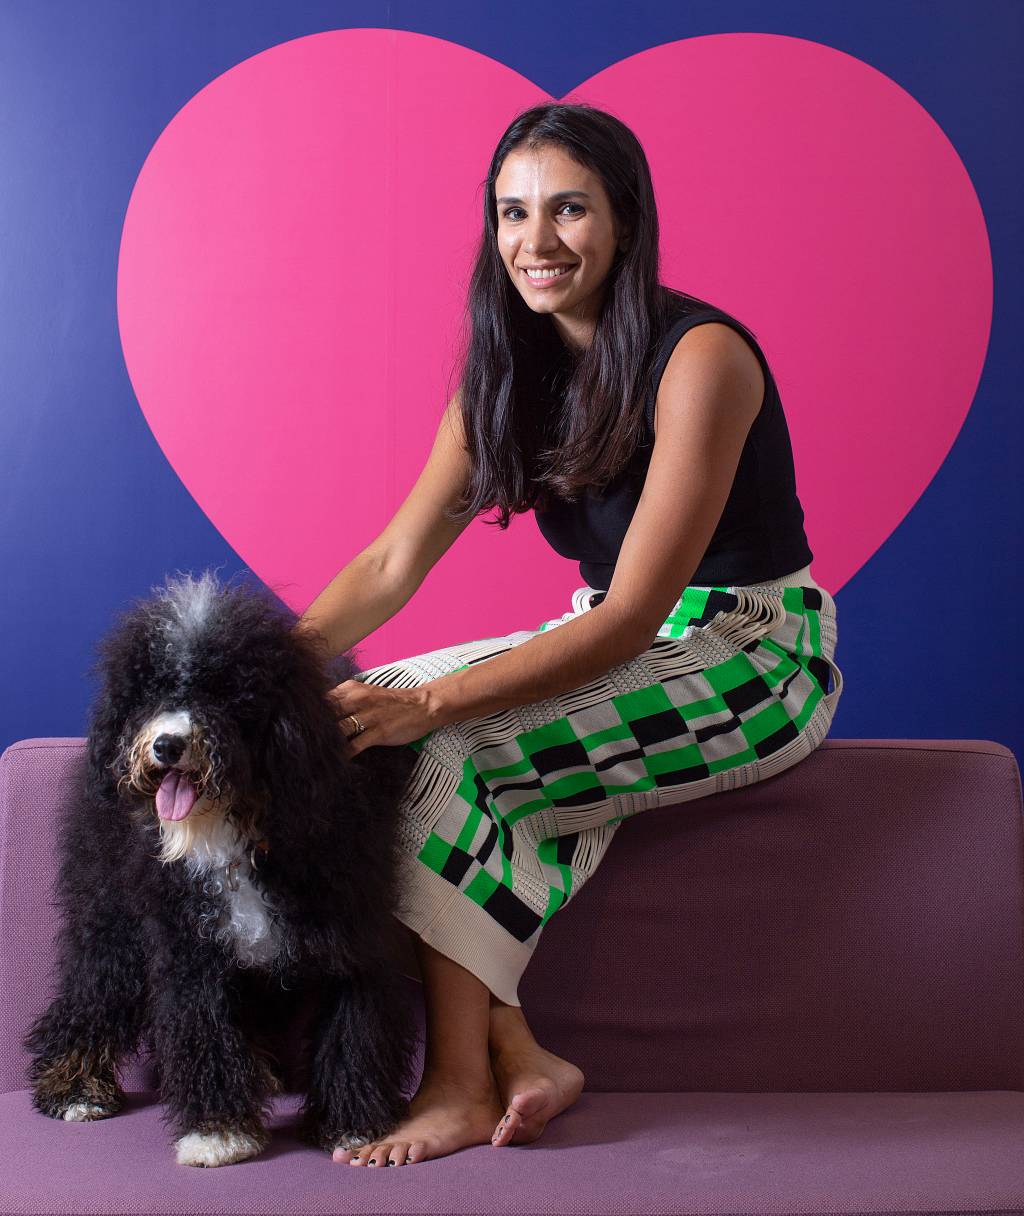 Talita Lacerda, CEO da Petlove, posa sentada com cachorro preto ao lado e fundo com coração rosa. Tem cabelos pretos longos e veste jeans clara.